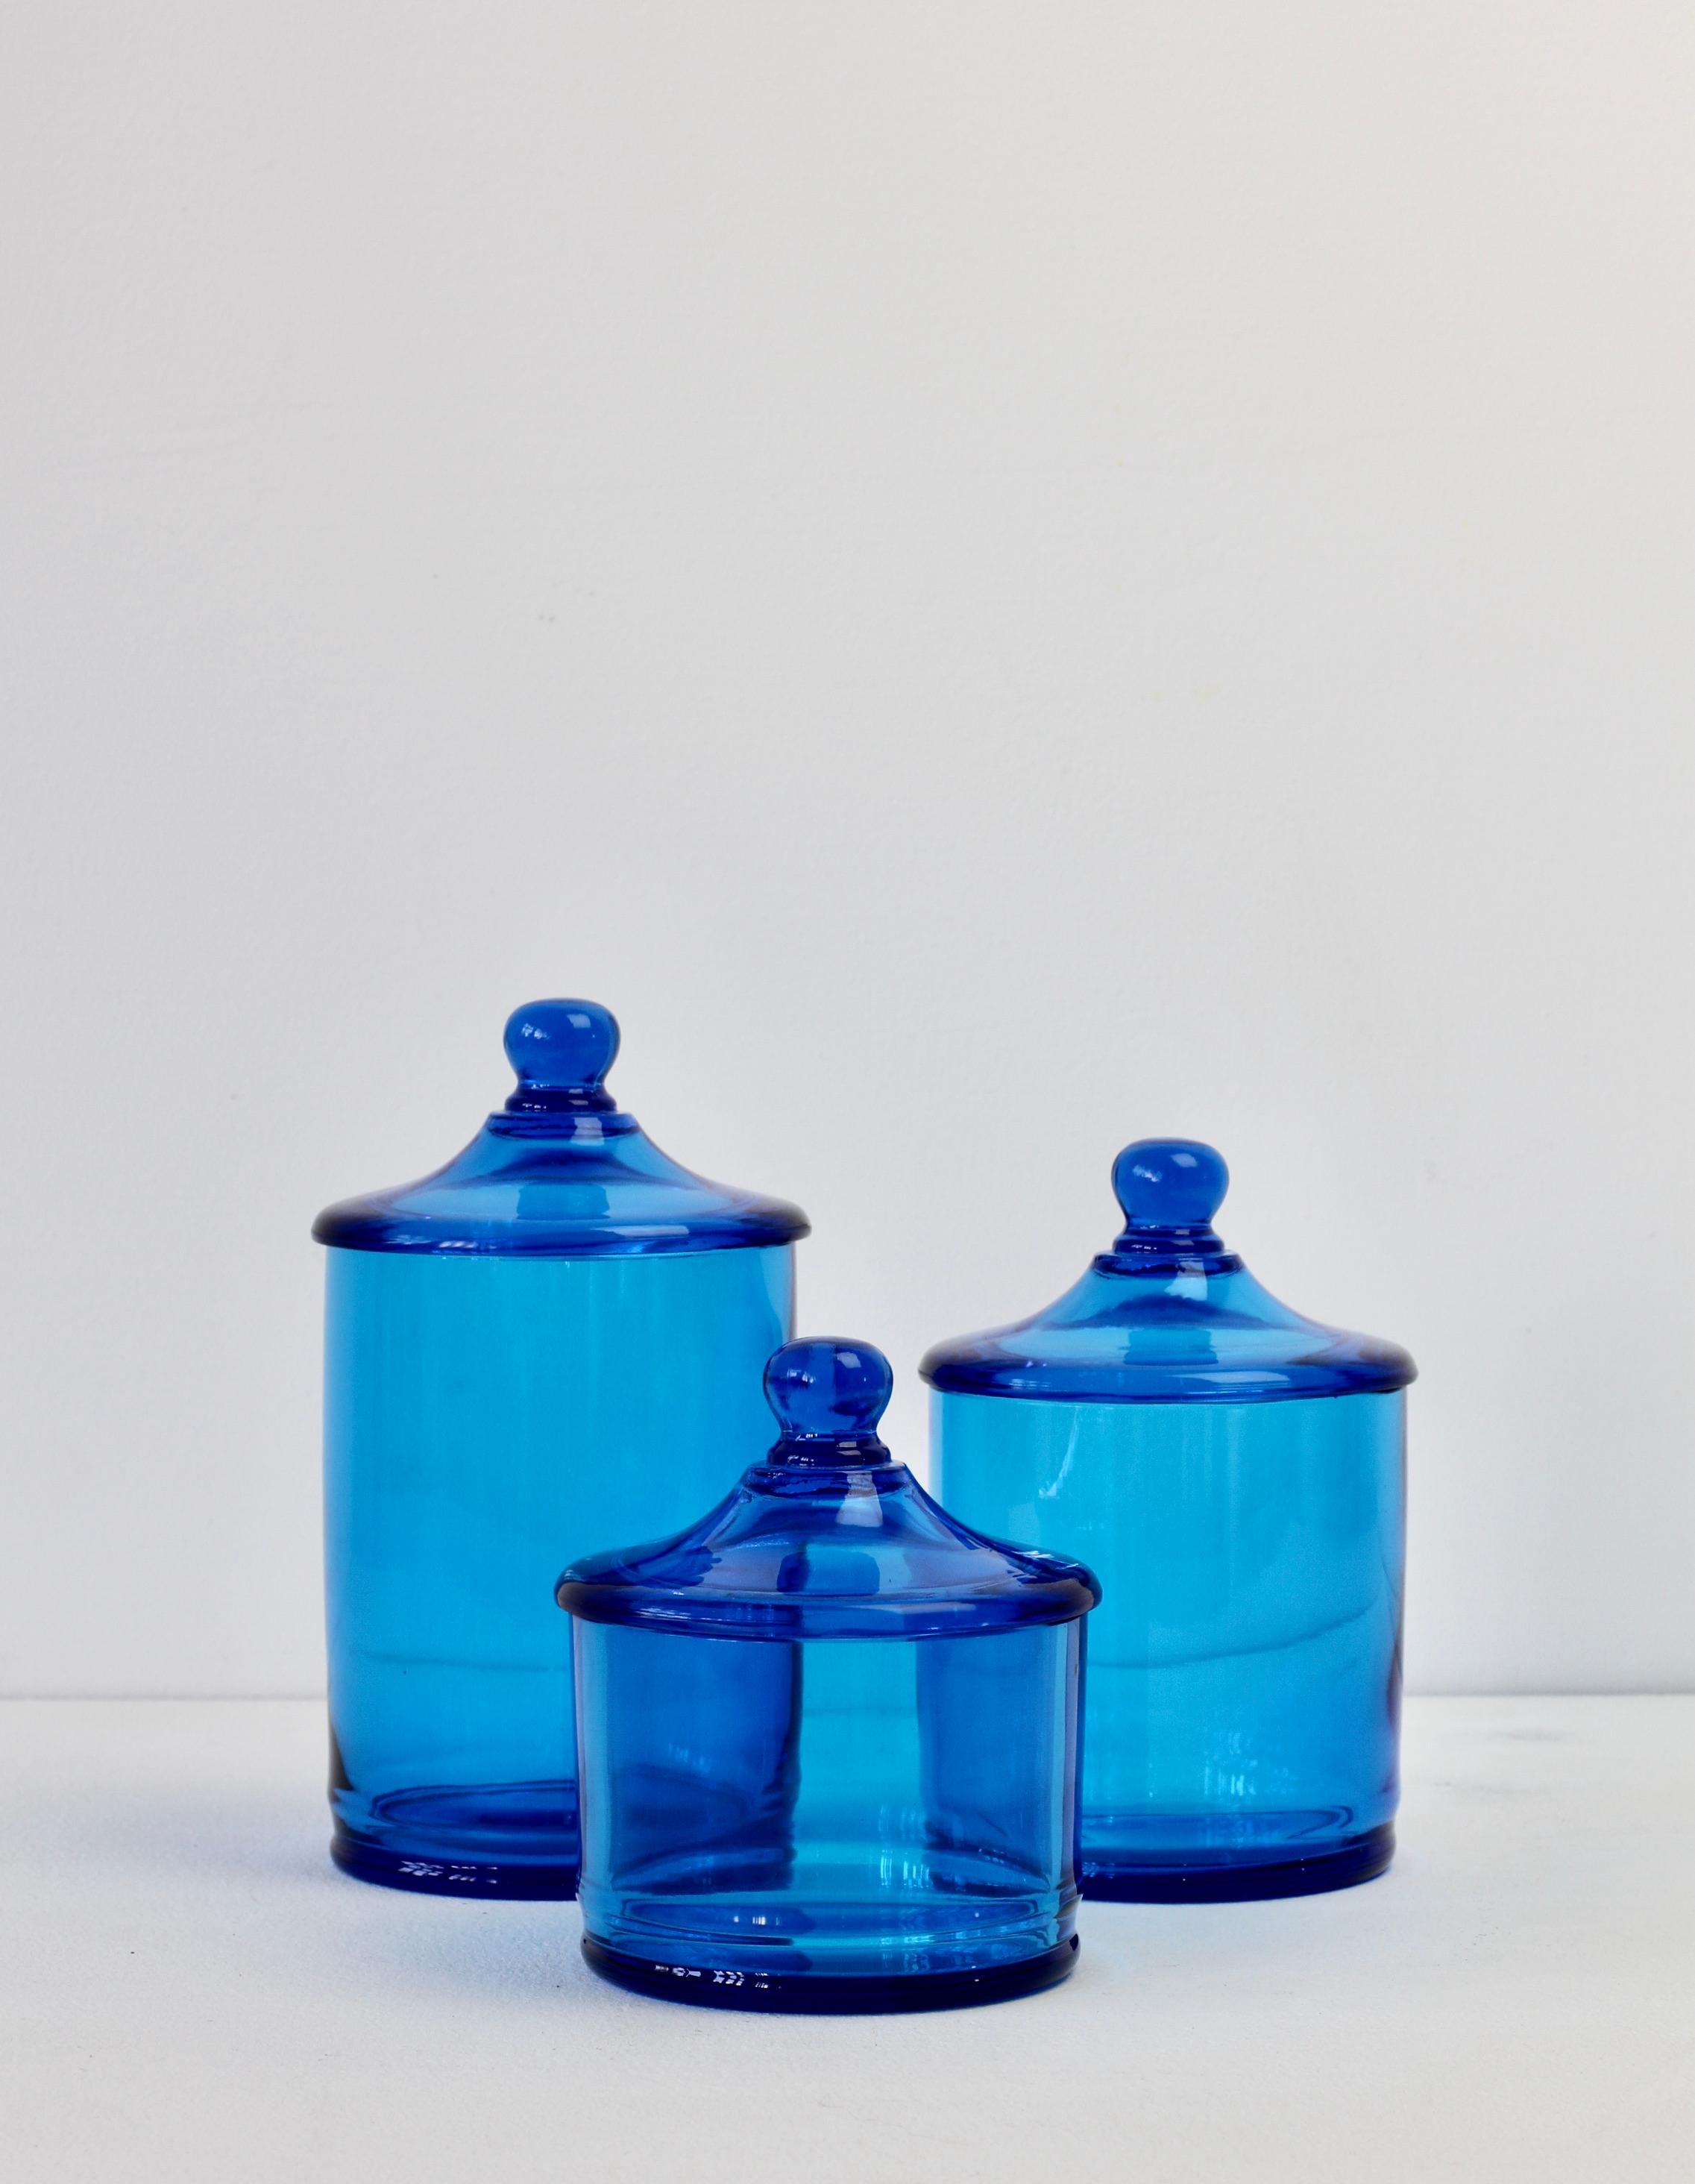 Seltener Satz von drei venezianischen Murano blau gefärbt / farbigen Glas Apotheker Gläser oder Urnen mit Deckel. Wunderschönes italienisches Mid-Century-Glas und perfekt für die Aufbewahrung von Süßigkeiten oder Snacks in der Küche oder für